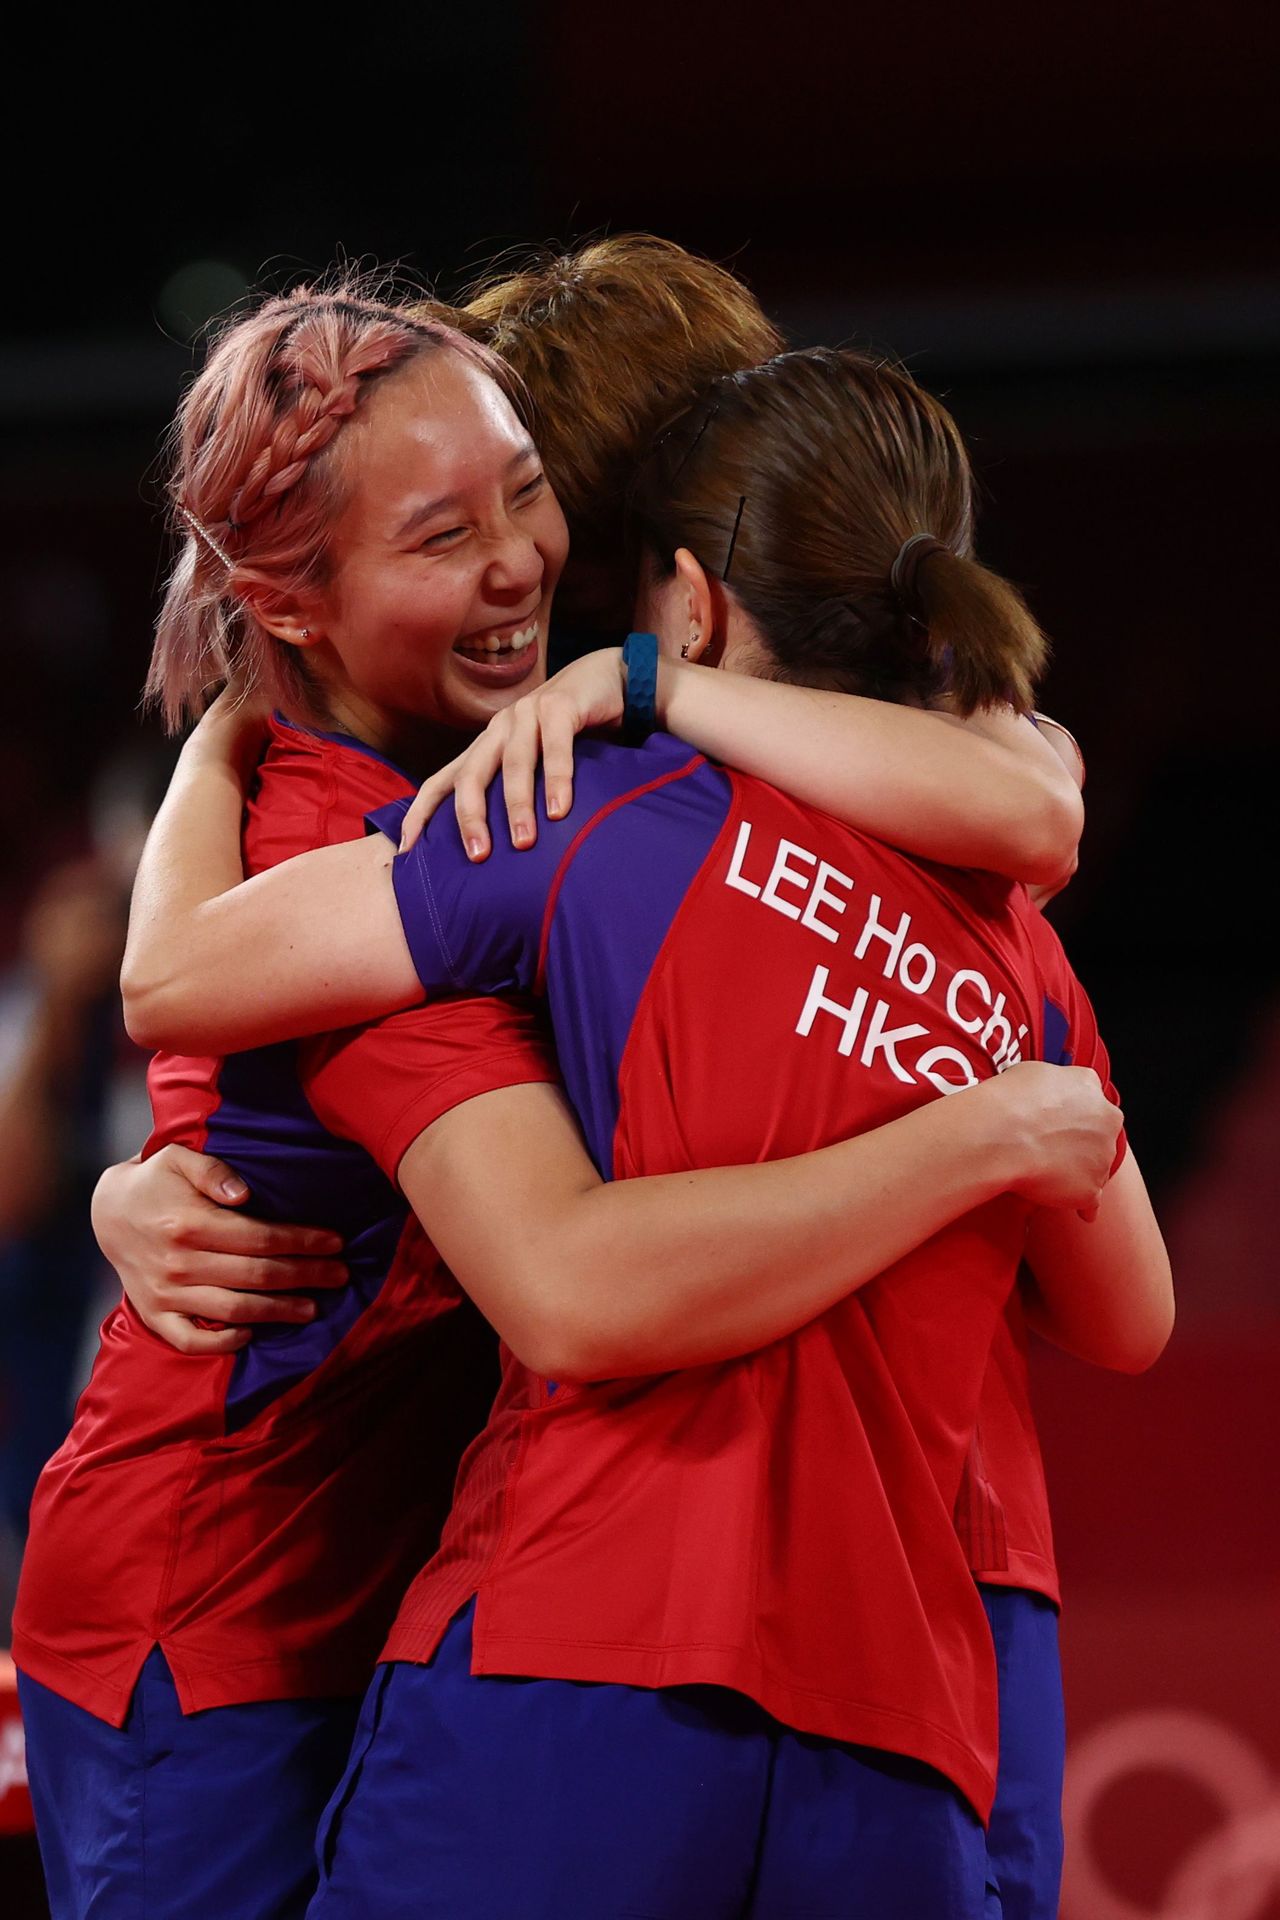 فريق هونج كونج يحتفل بالفوز ببرونزية فرق السيدات في تنس الطاولة بأولمبياد طوكيو لهونج كونج يوم الخميس بعد الفوز 3-1 على ألمانيا.